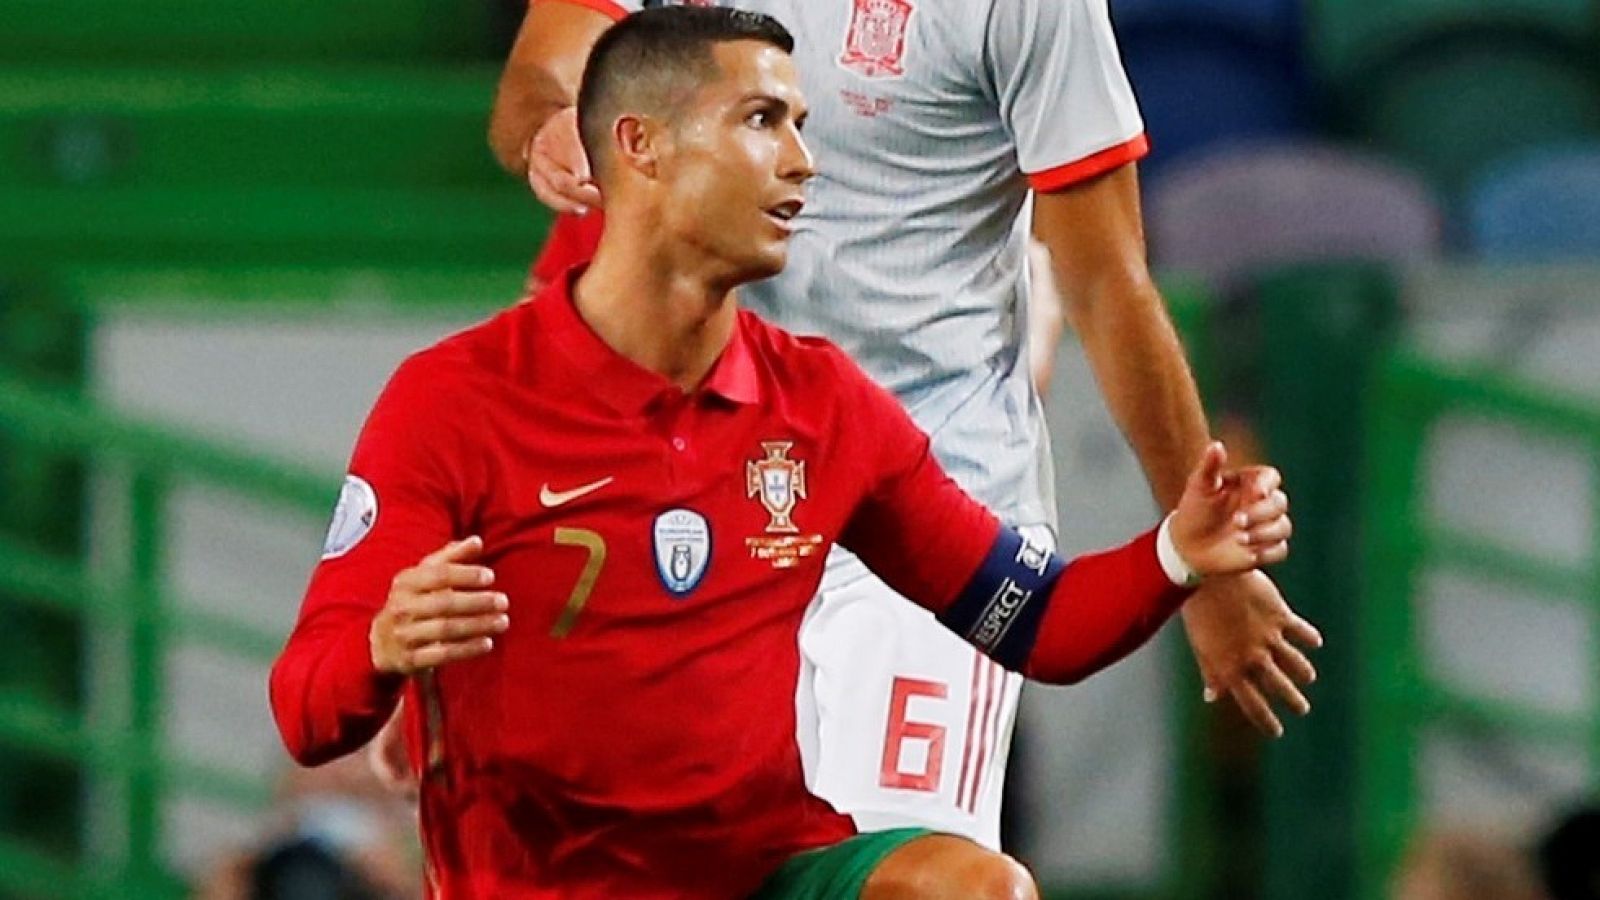 Portugal 0-0 España | El larguero de España frena a Cristiano